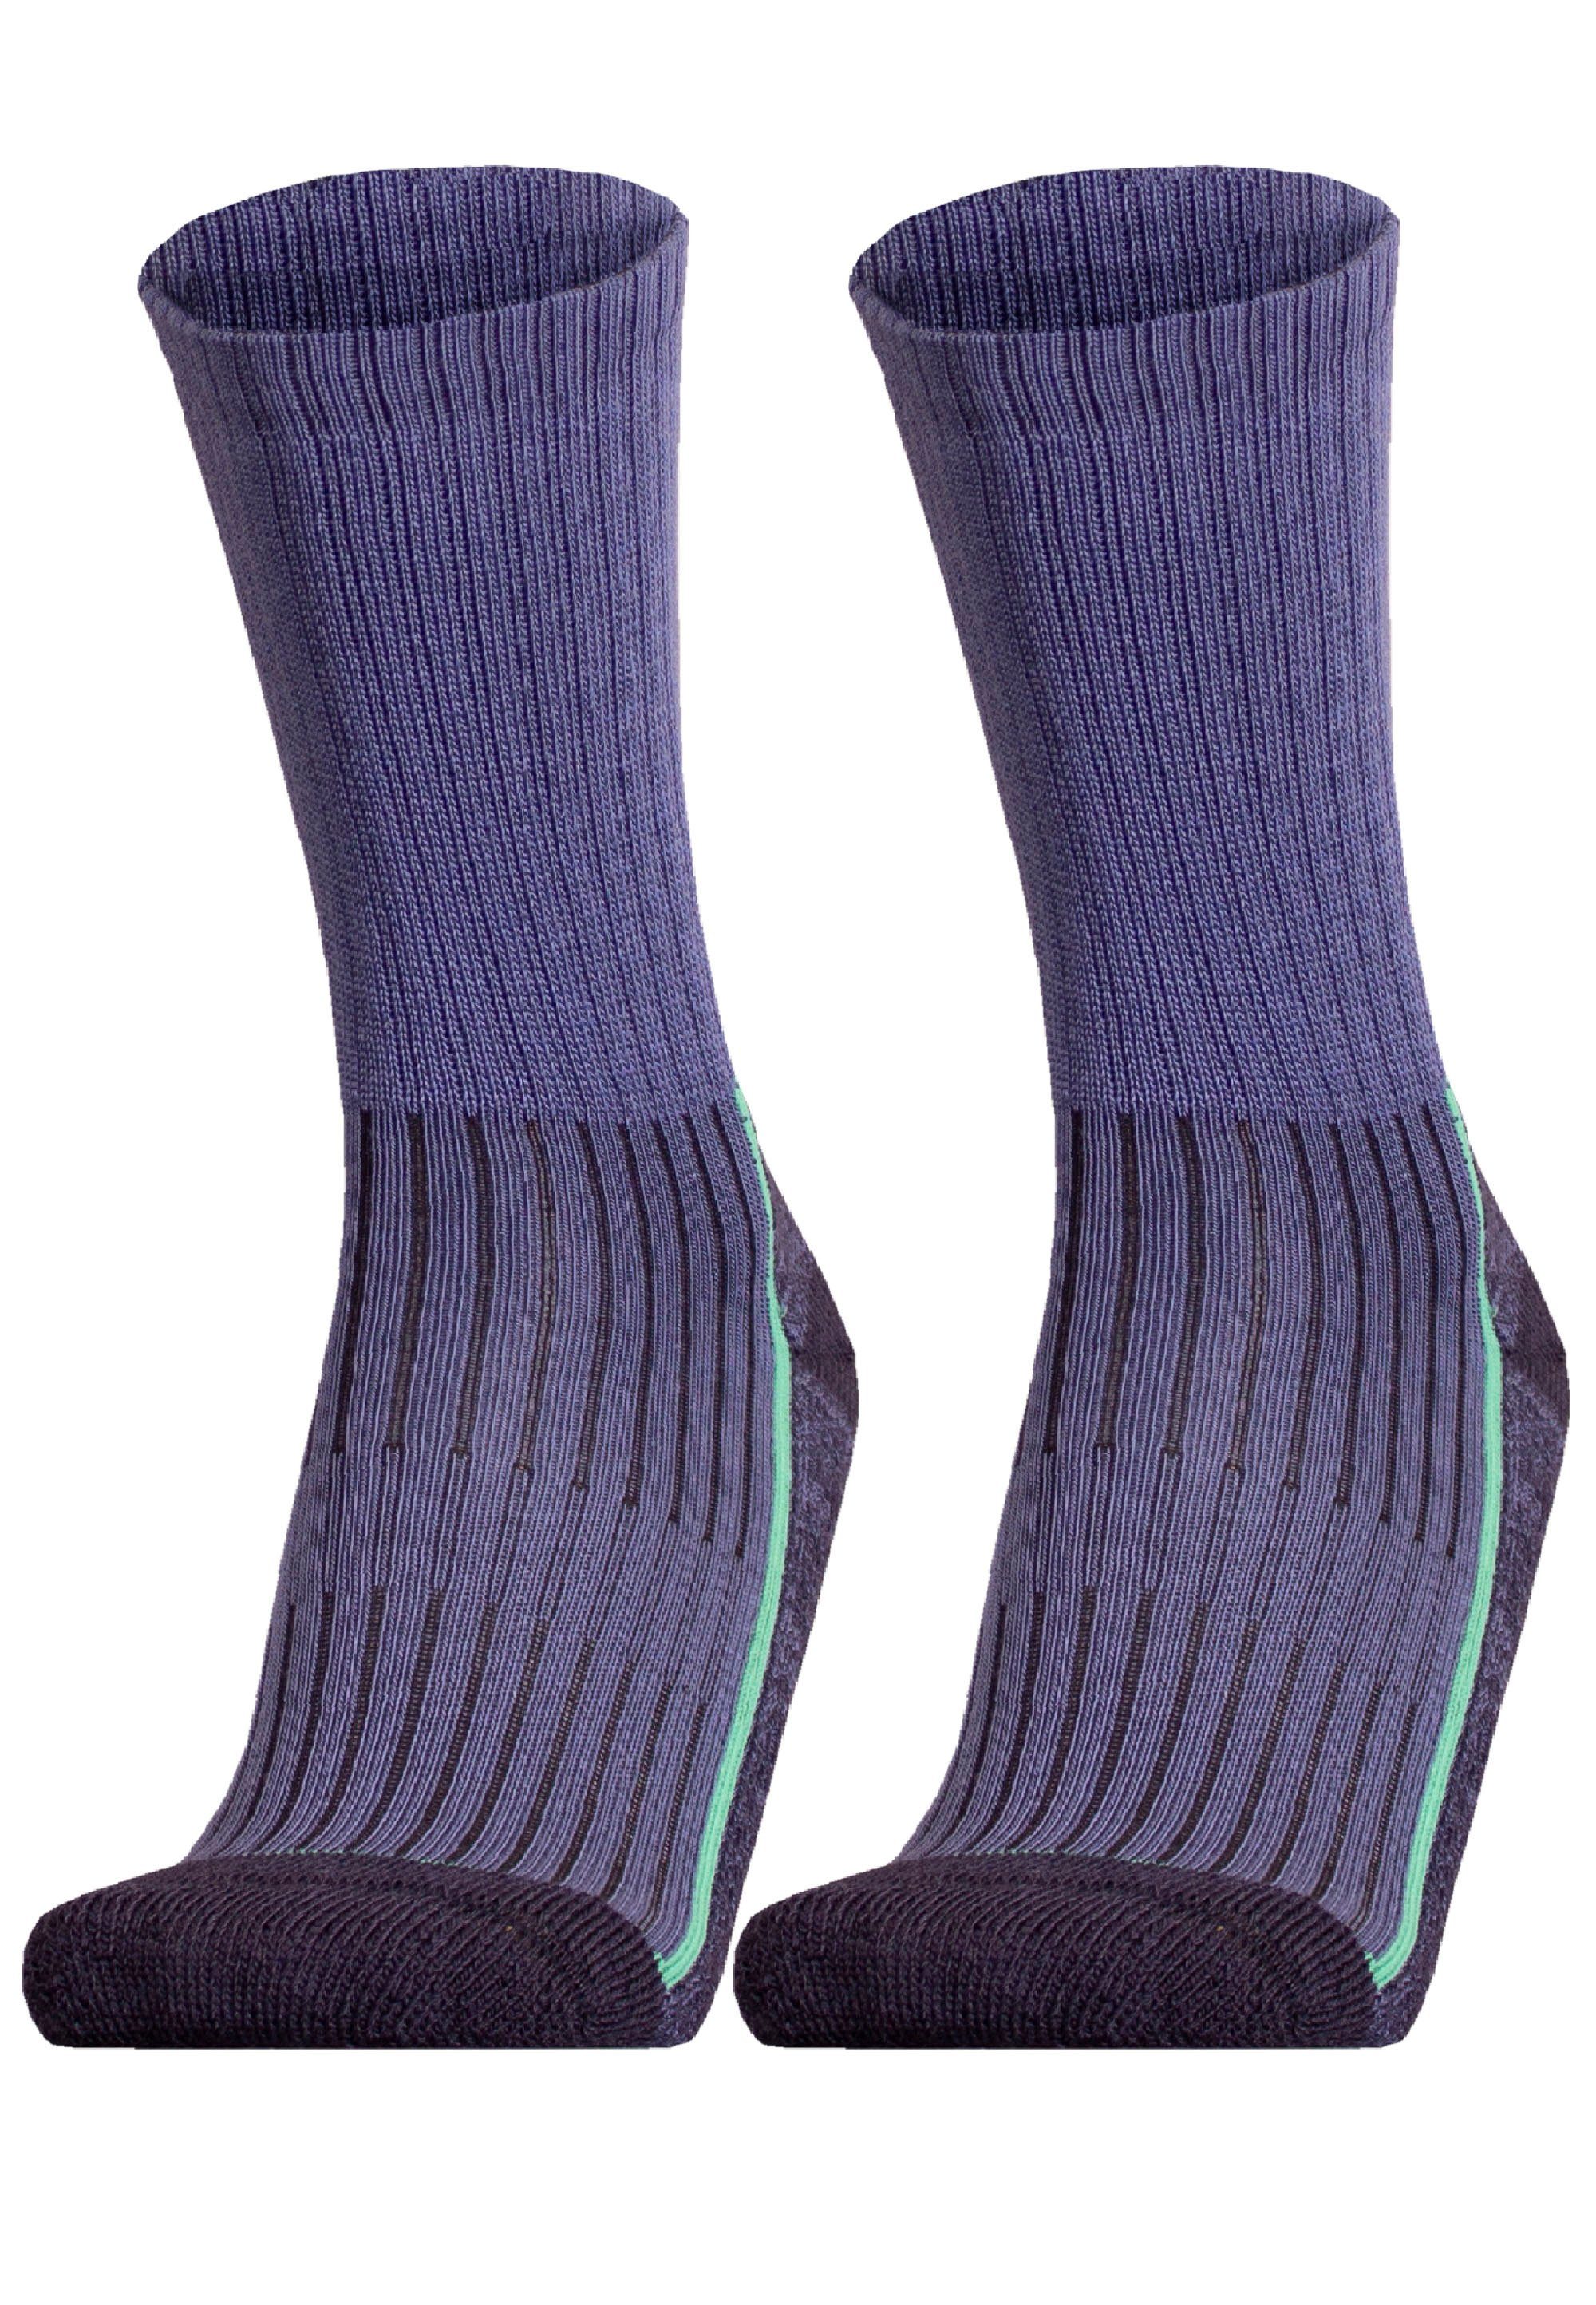 speziell Pack 2er Socken SAANA geformter blau (2-Paar) UphillSport Ferse mit